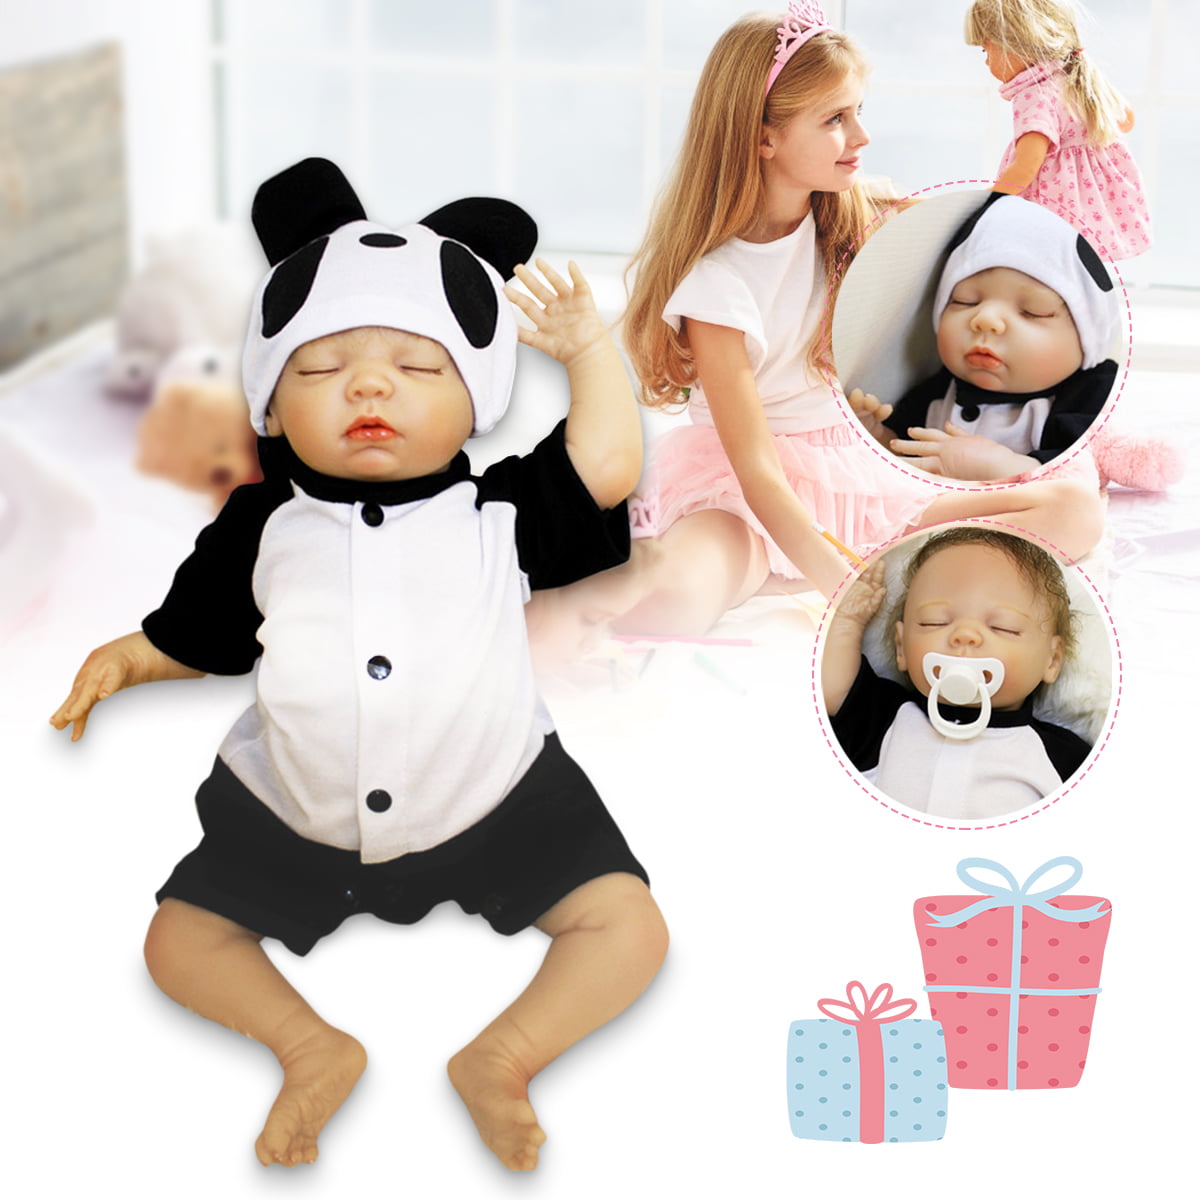 18" Handmade Reborn Baby Doll Newborn Lifelike Dolls Soft Silicone Vinyl Boy